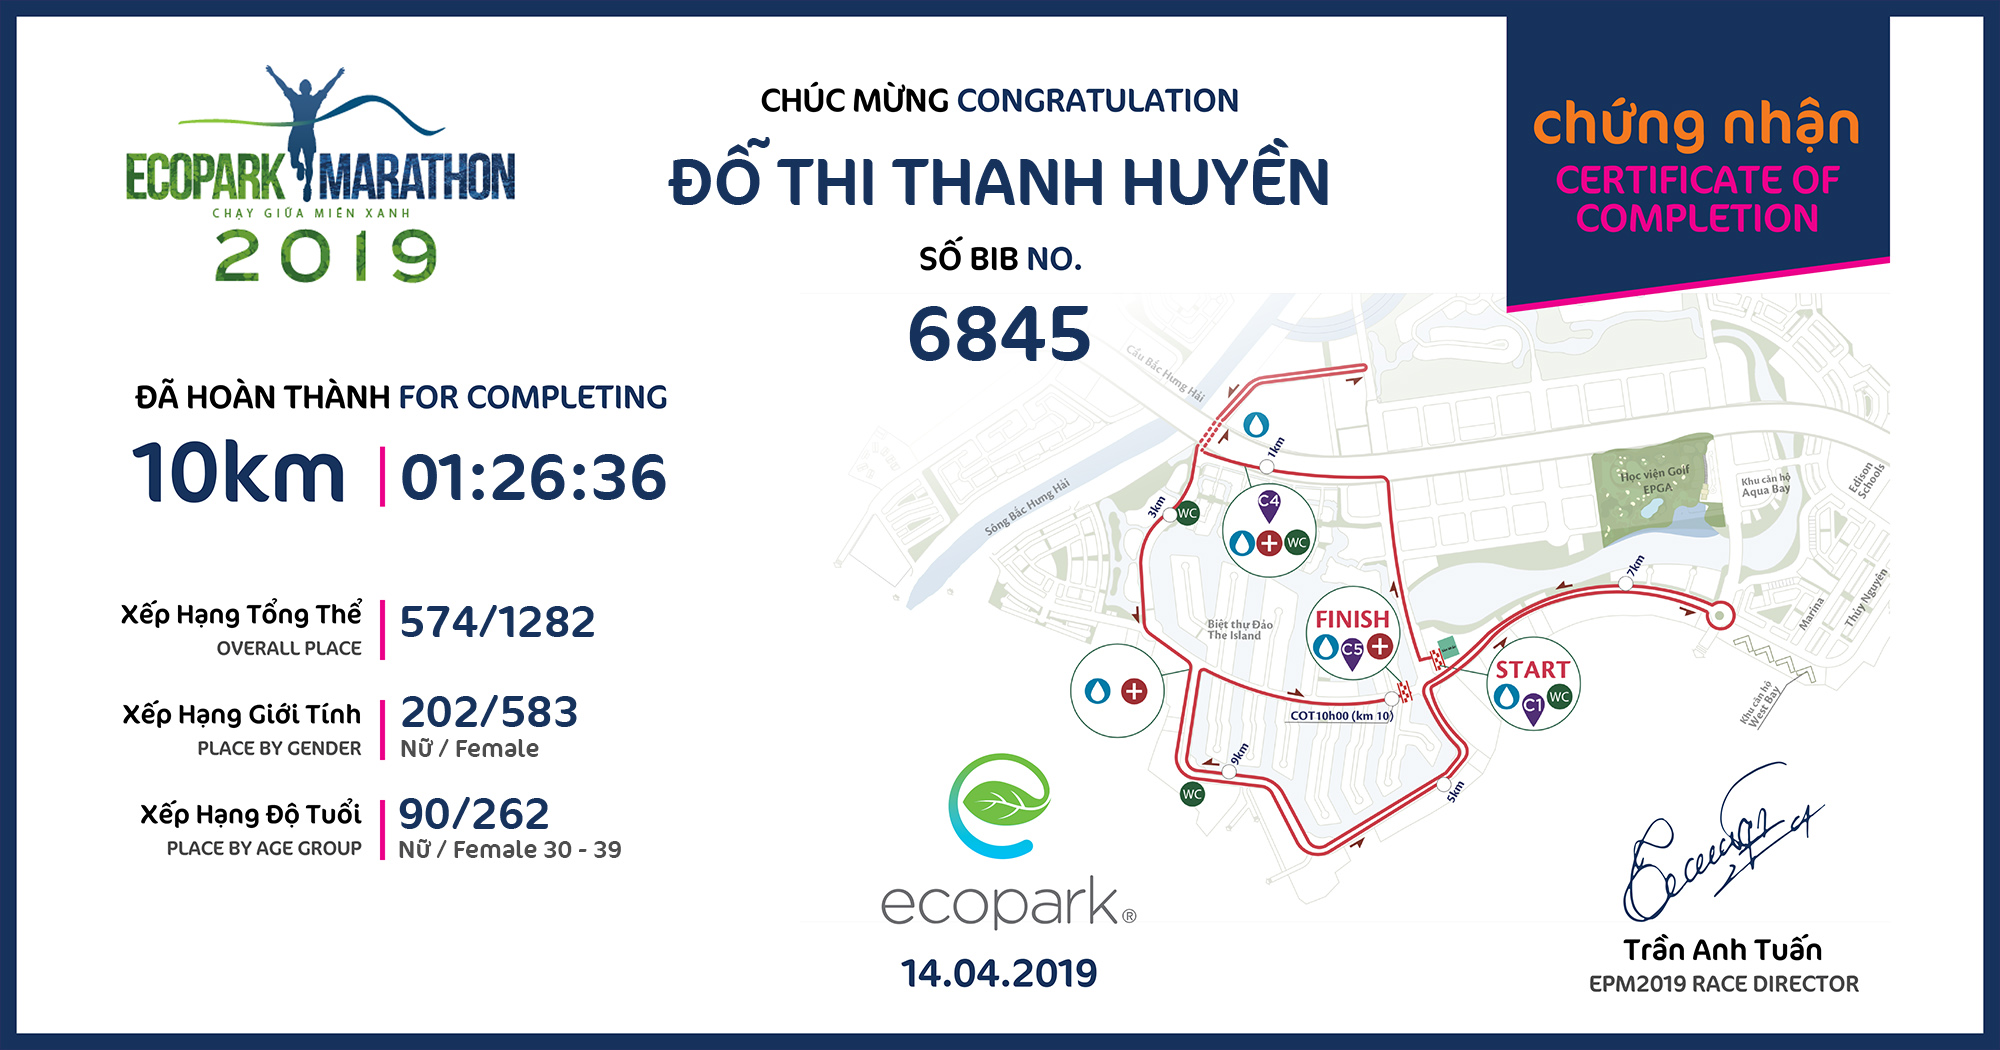 6845 - Đỗ Thi Thanh Huyền